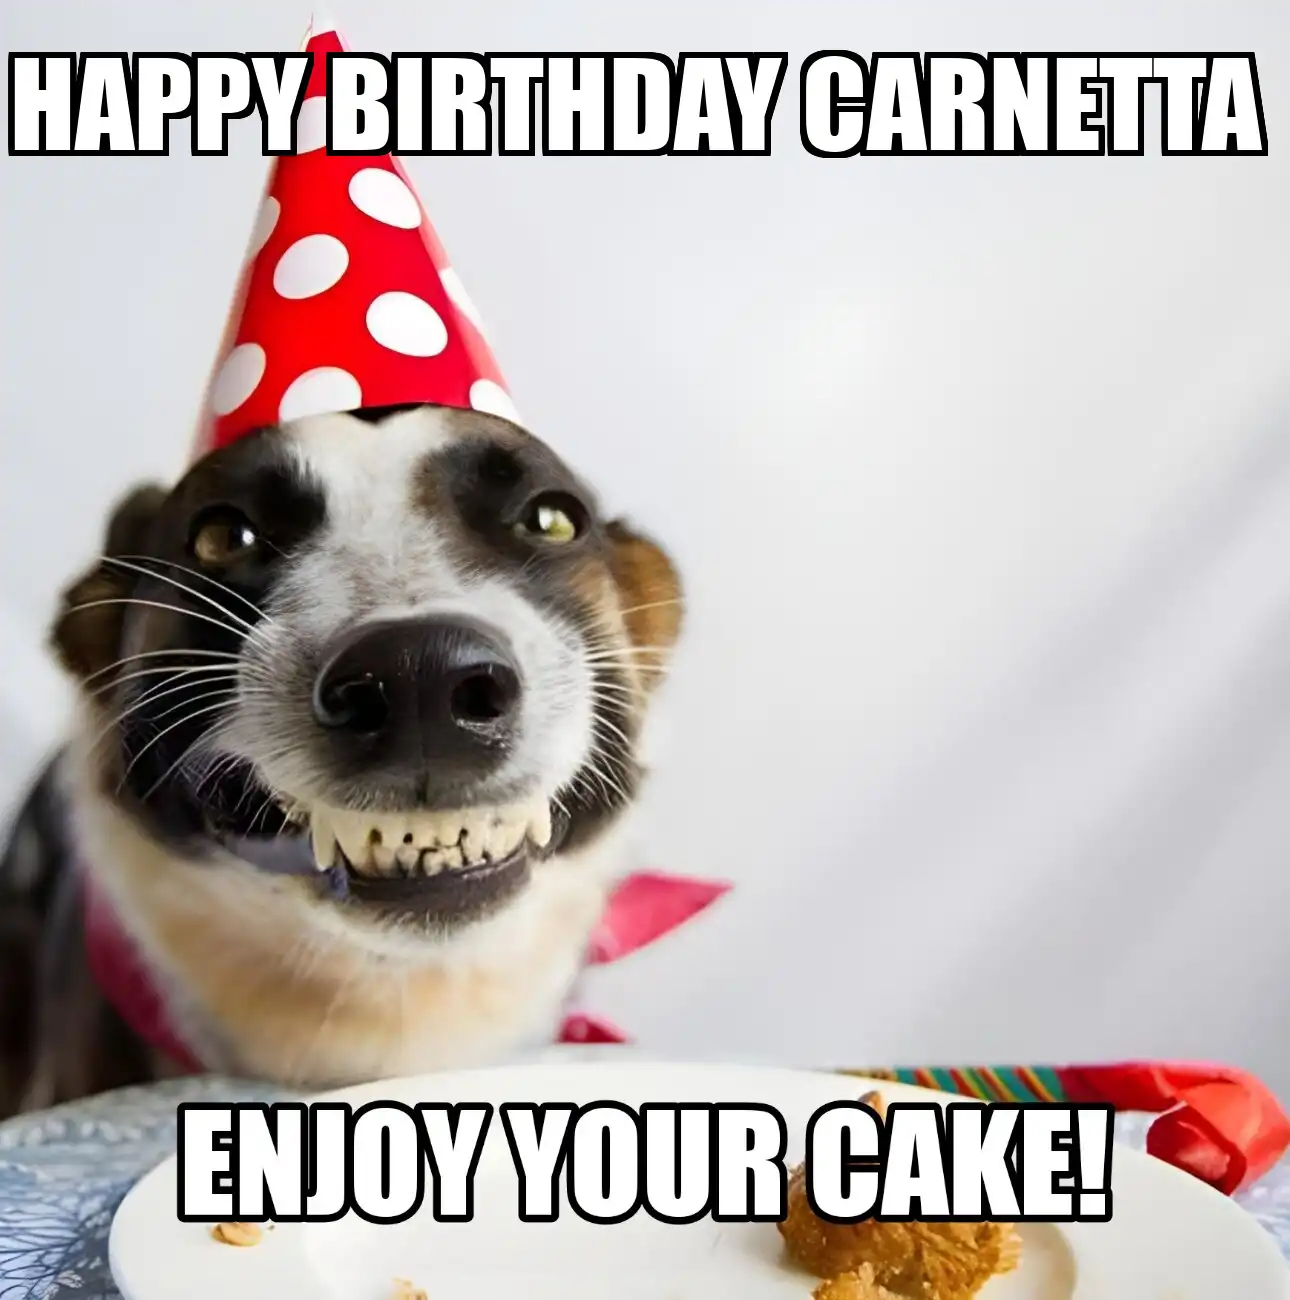 Happy Birthday Carnetta Enjoy Your Cake Dog Meme